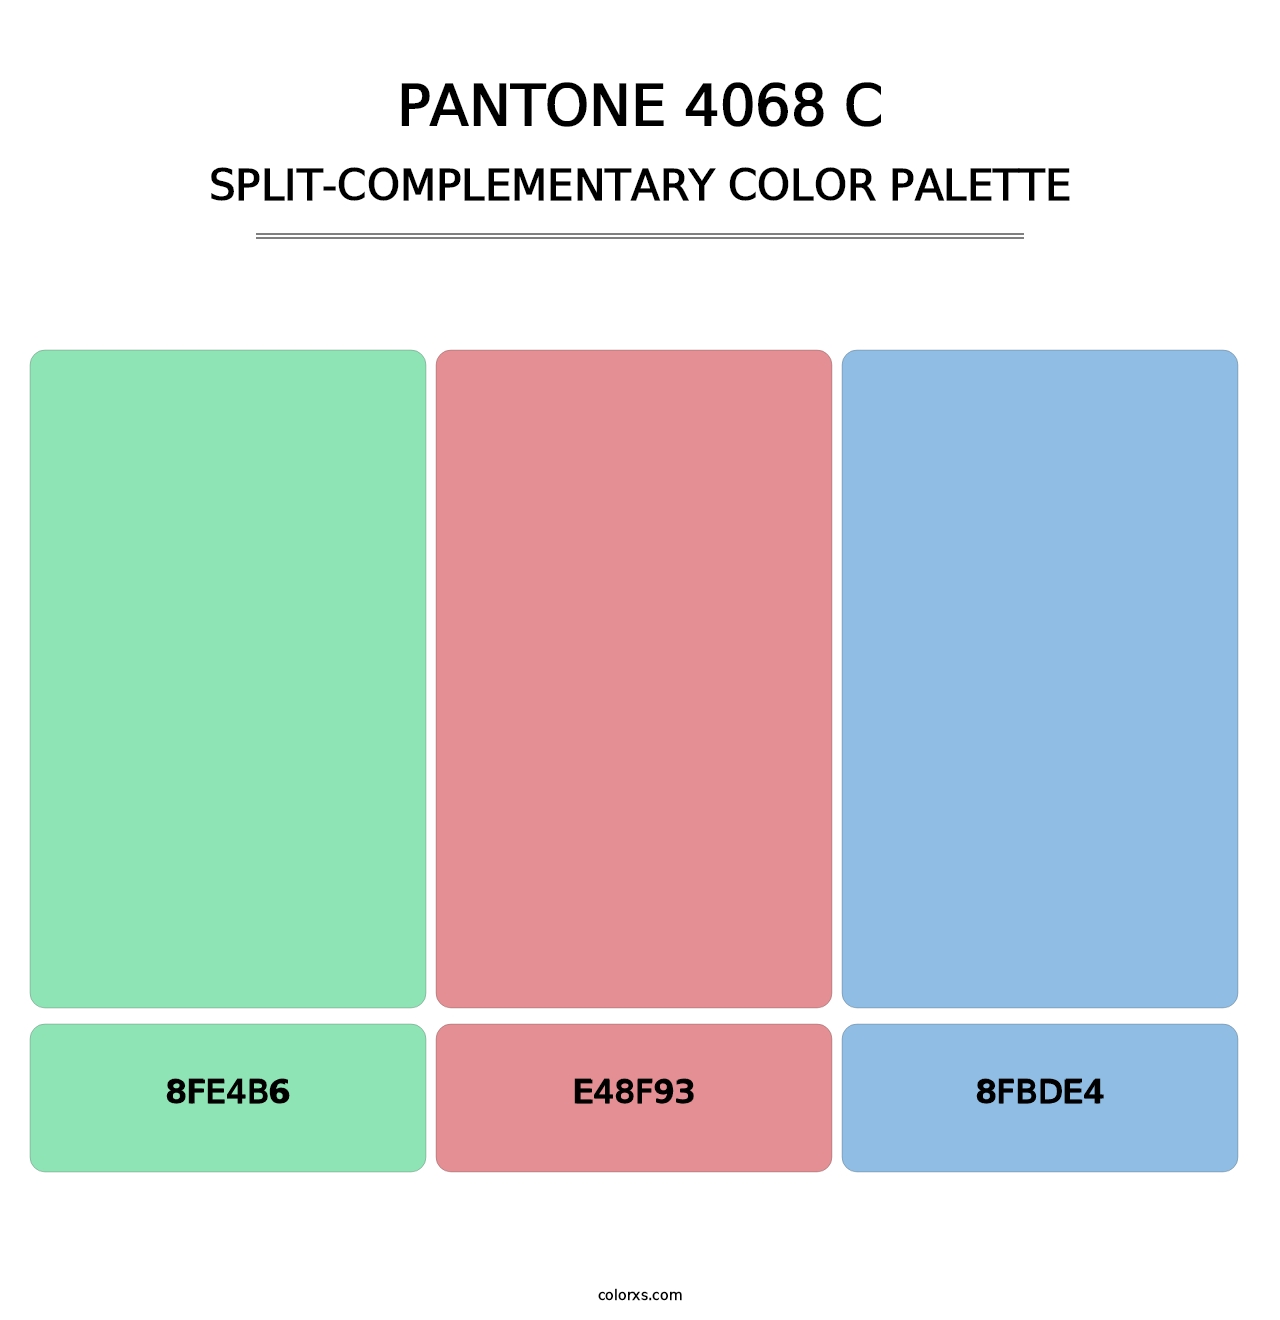 PANTONE 4068 C - Split-Complementary Color Palette